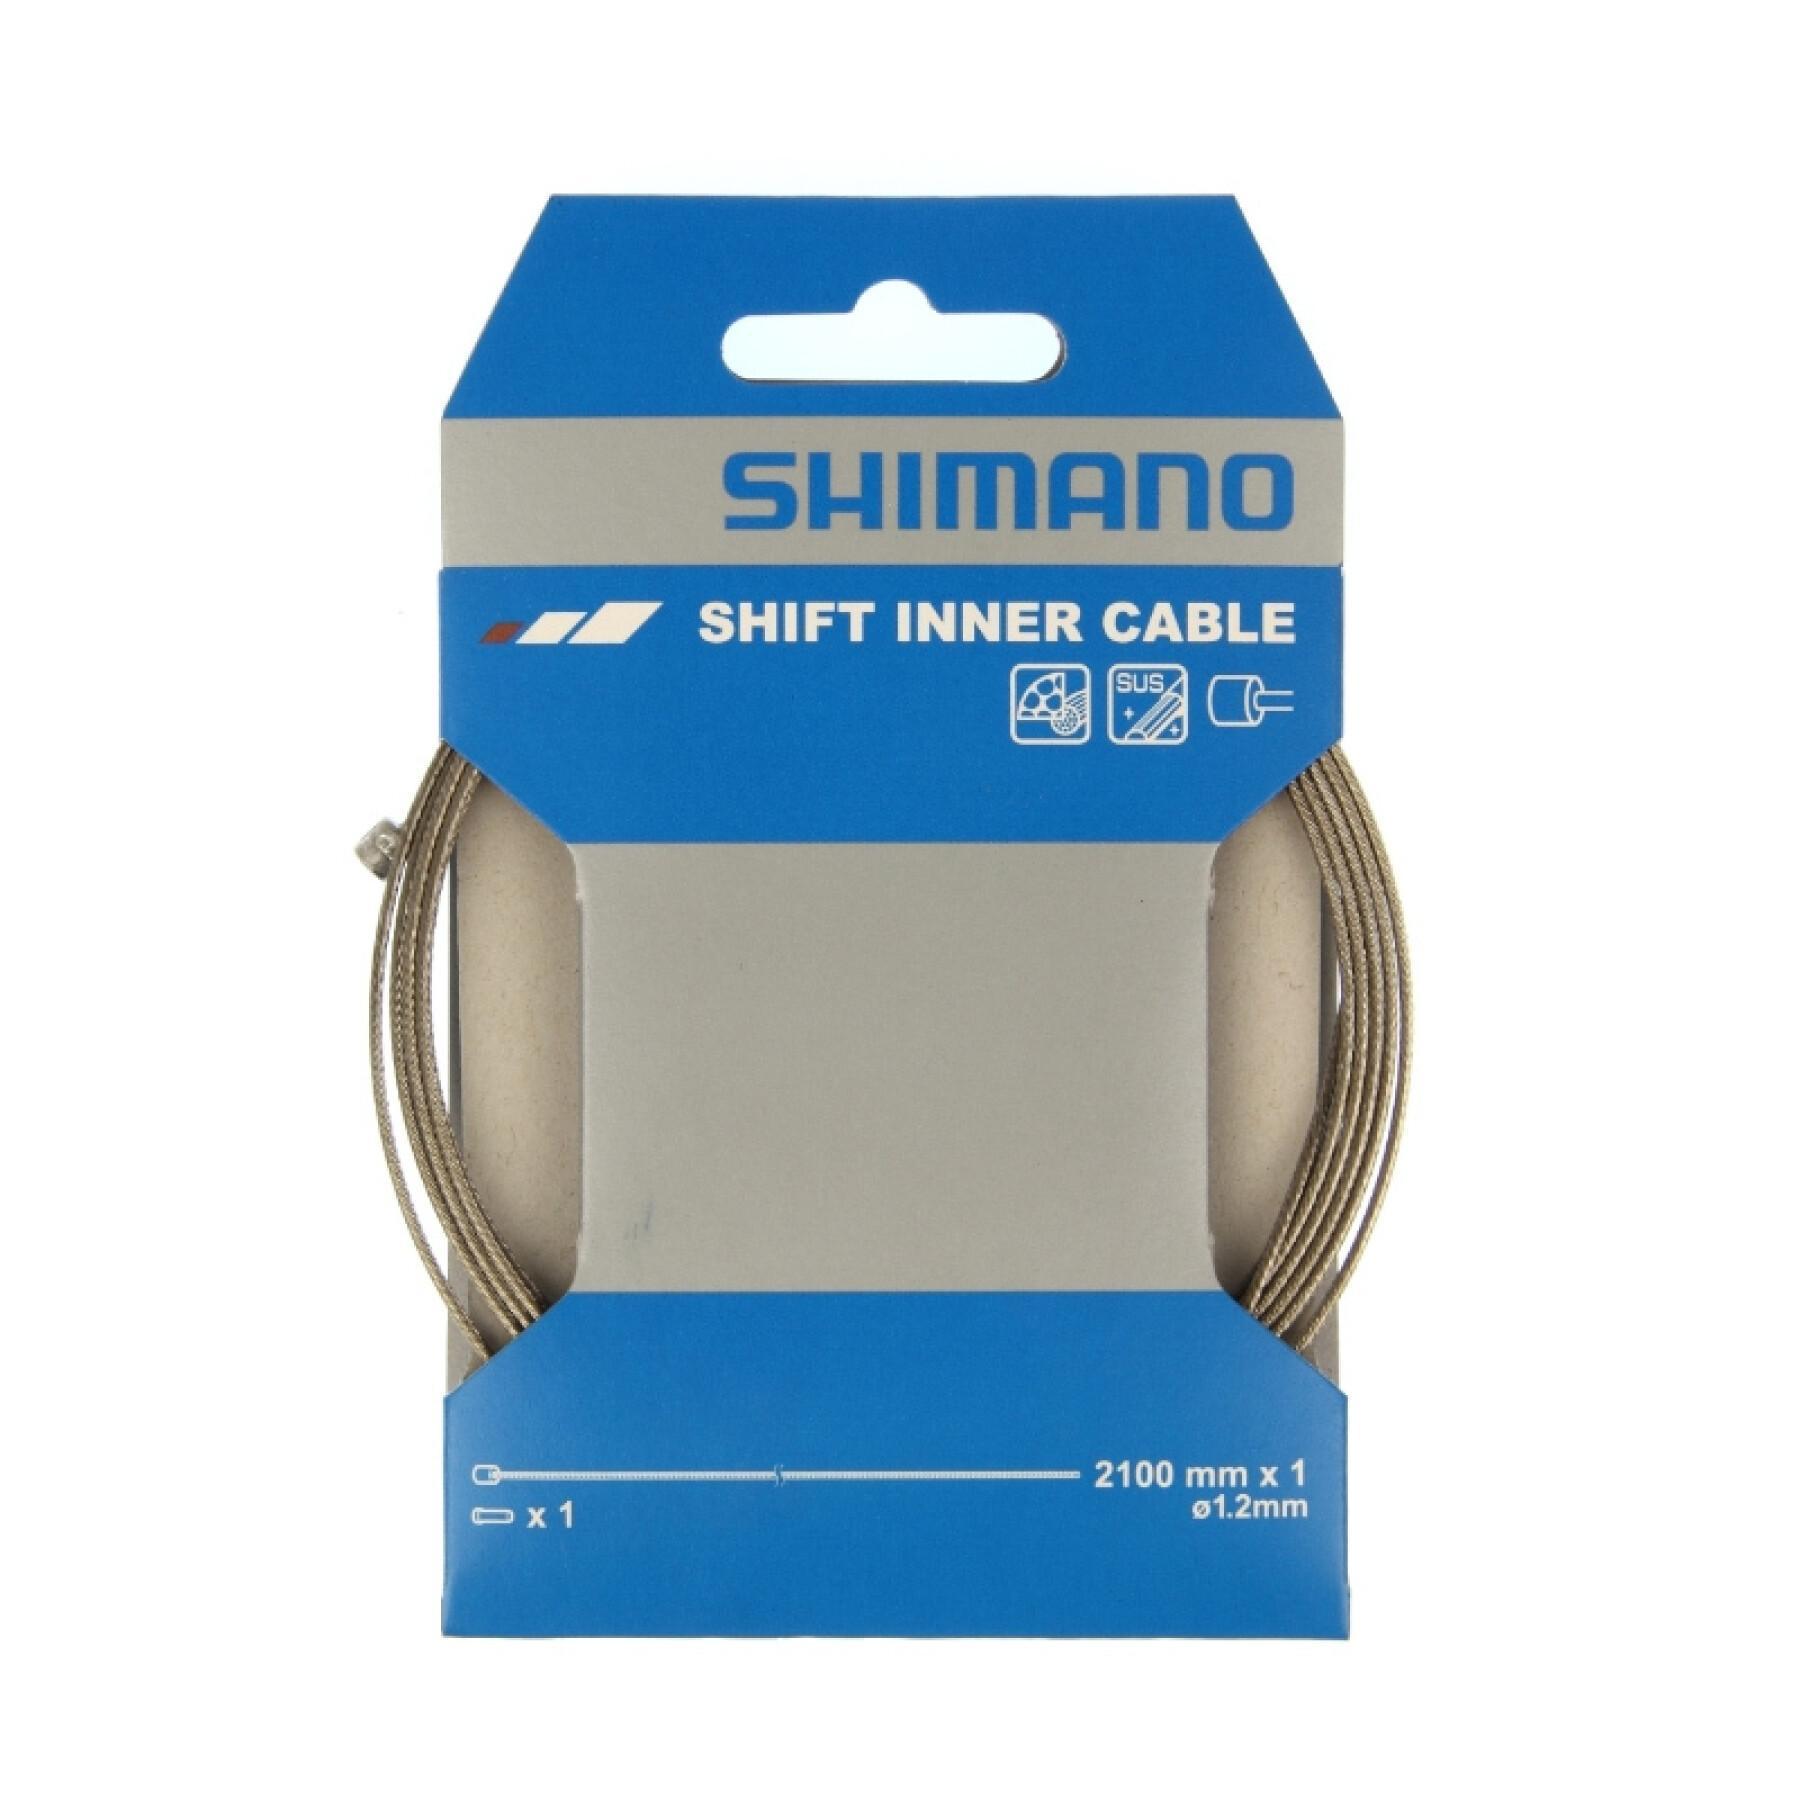 Rostfreies Kabel für das hintere Schaltwerk Shimano Sus